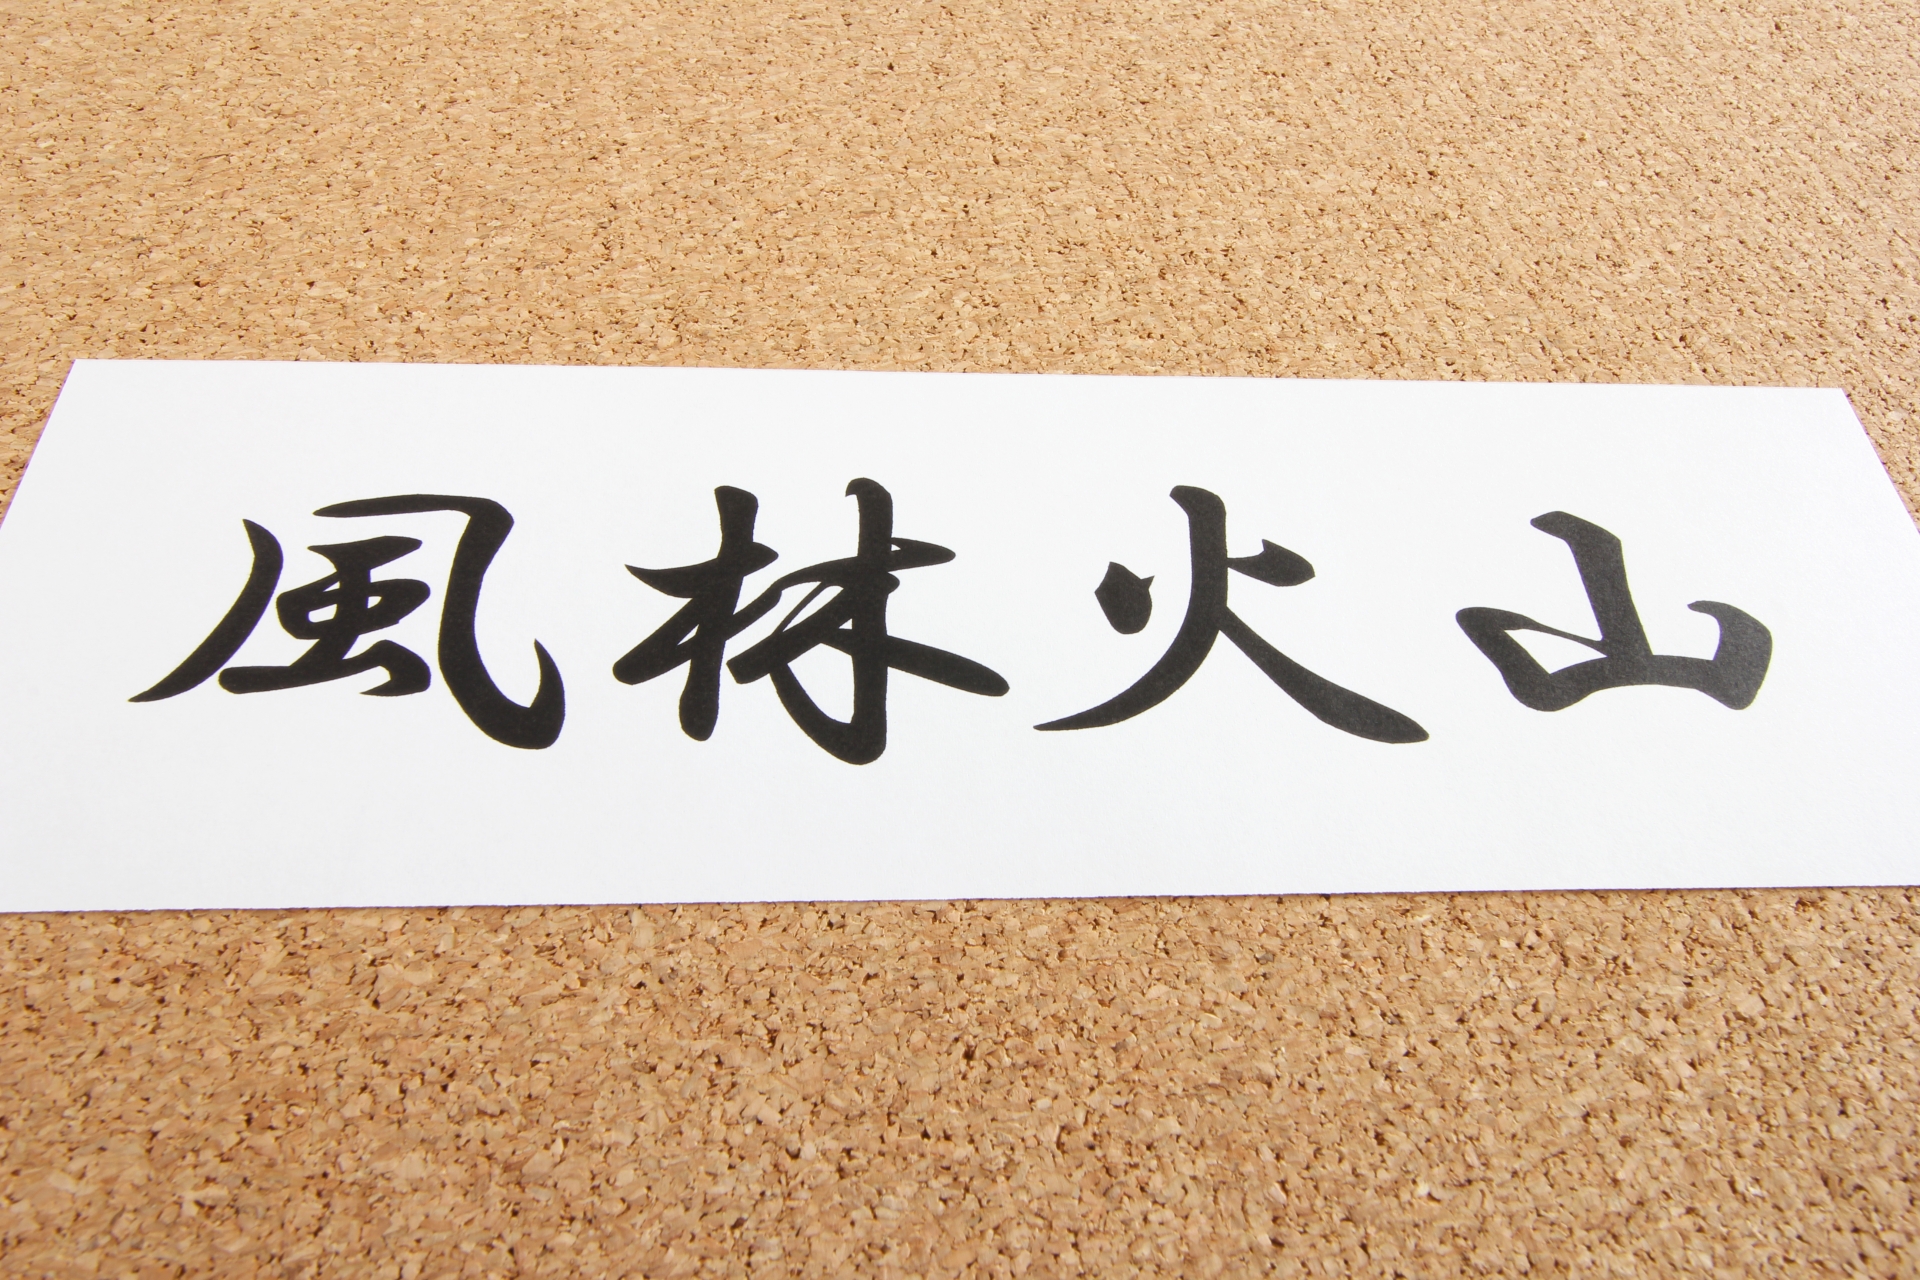 美文字の流儀 実践3日目 漢字の美文字ルール 47種類の部首について お役立ちlabo 生活の 便利 を届けるブログ